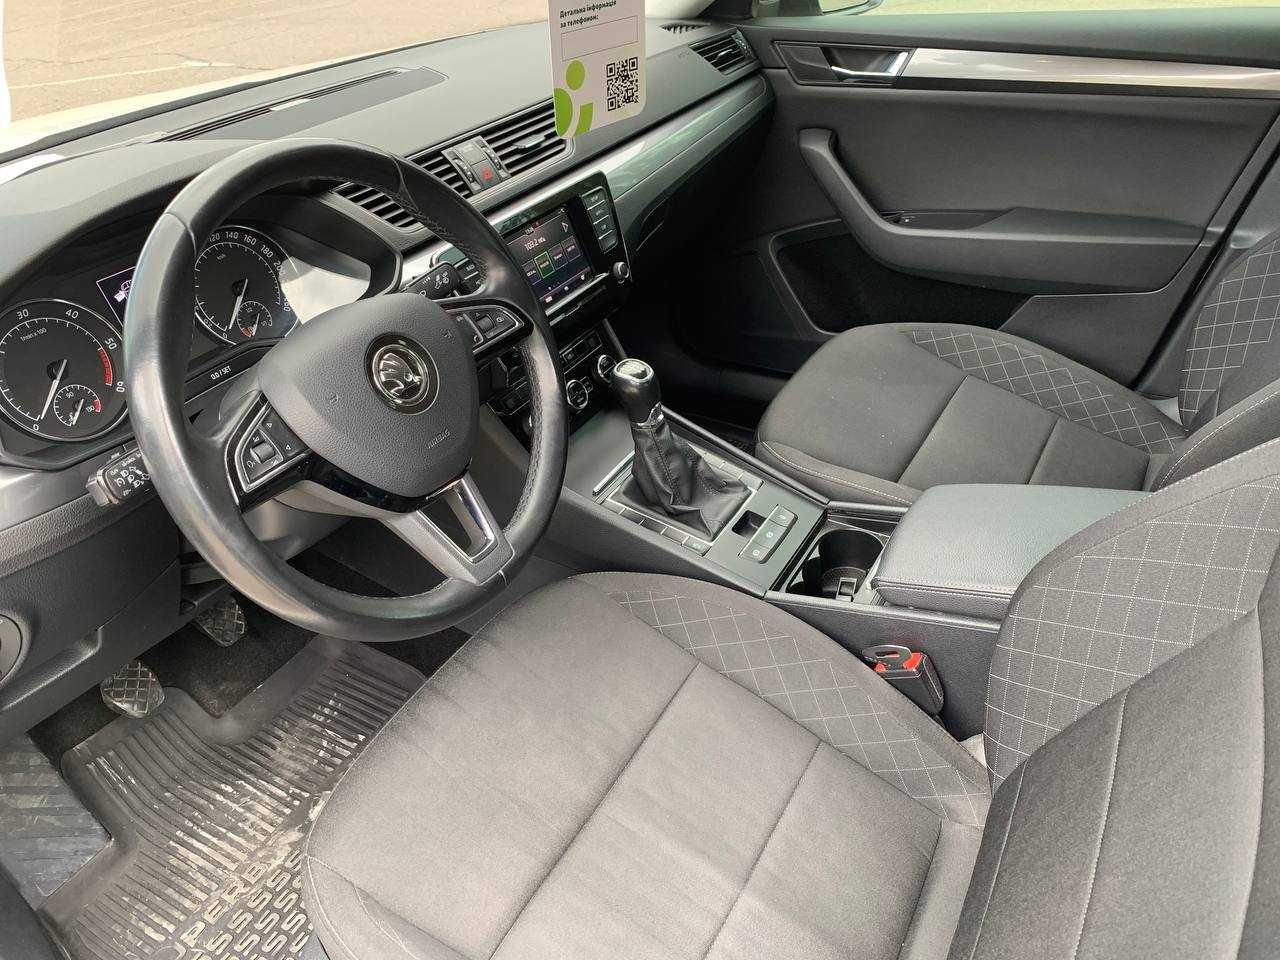 Авто Škoda Superb, 2018р. 2.0 TDI, обмін (перший внесок від 20%)